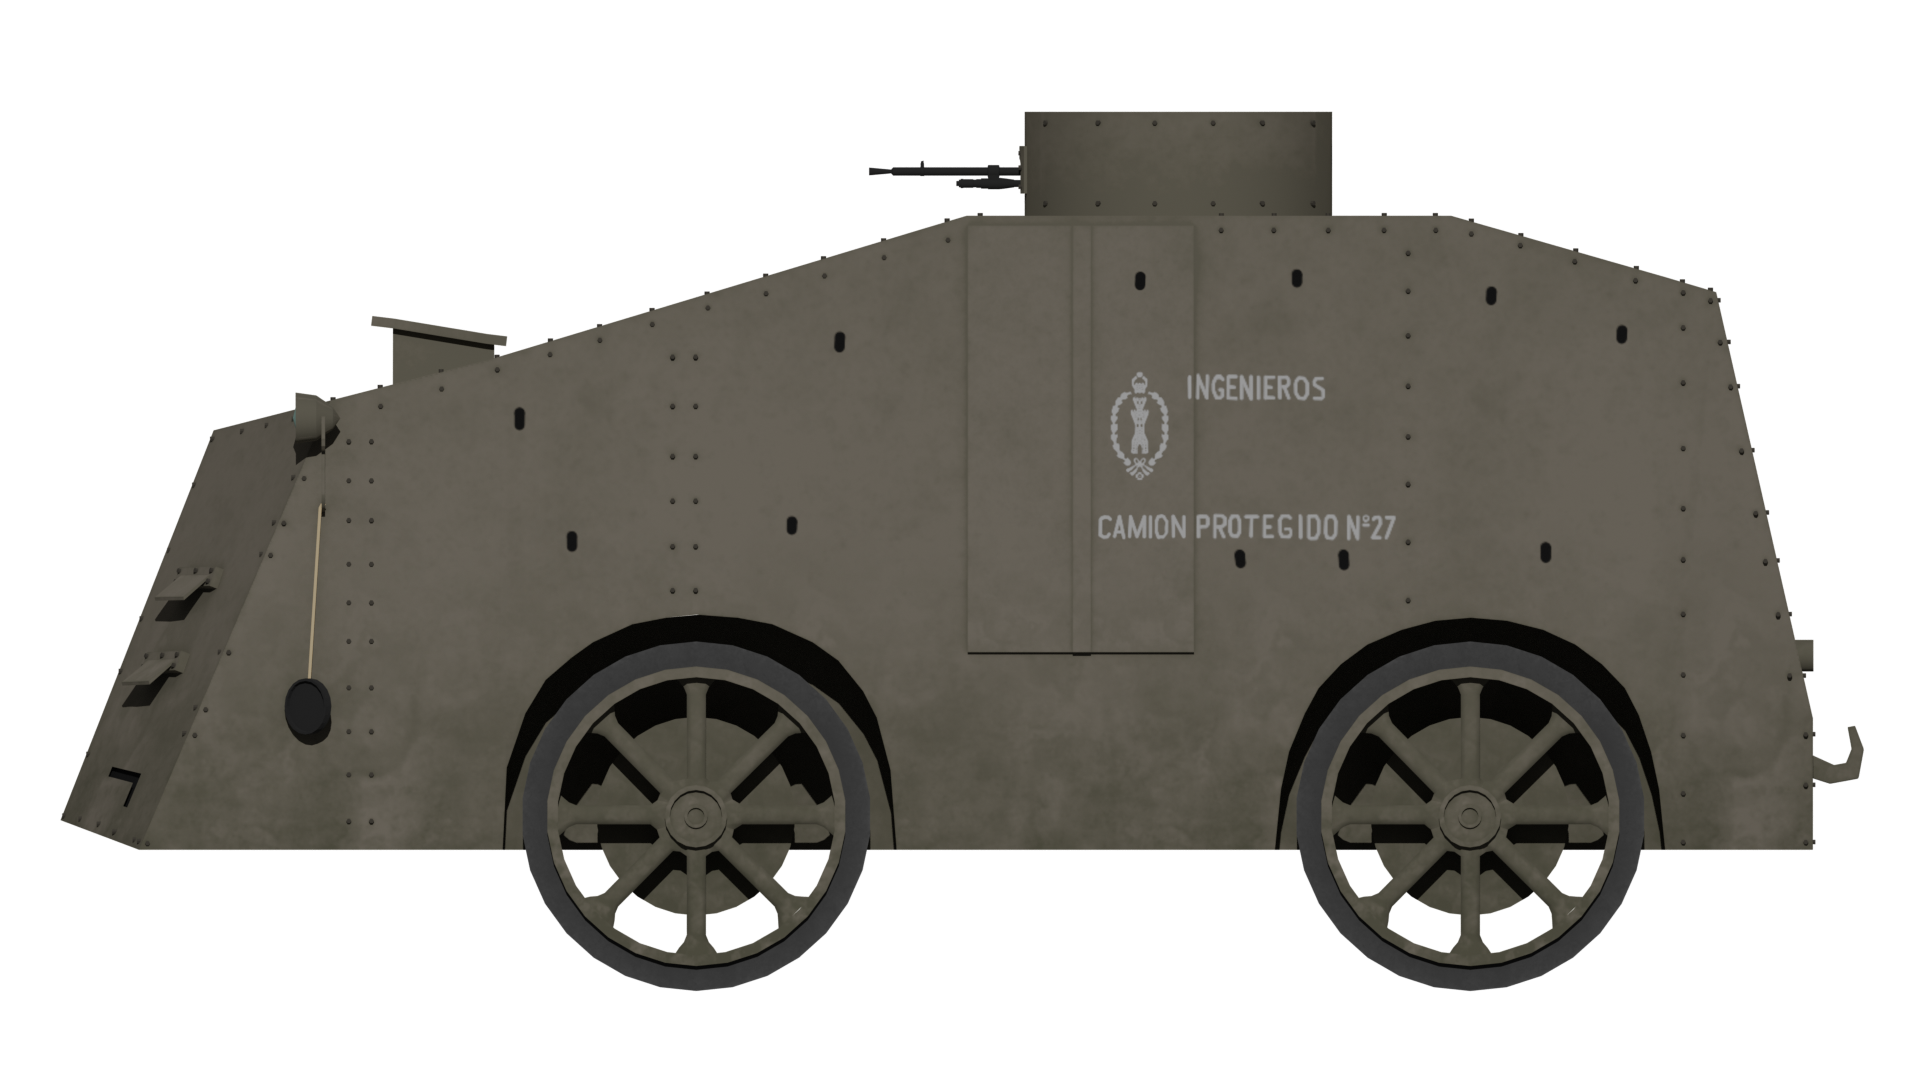 Camiones Protegidos Modelo 1921